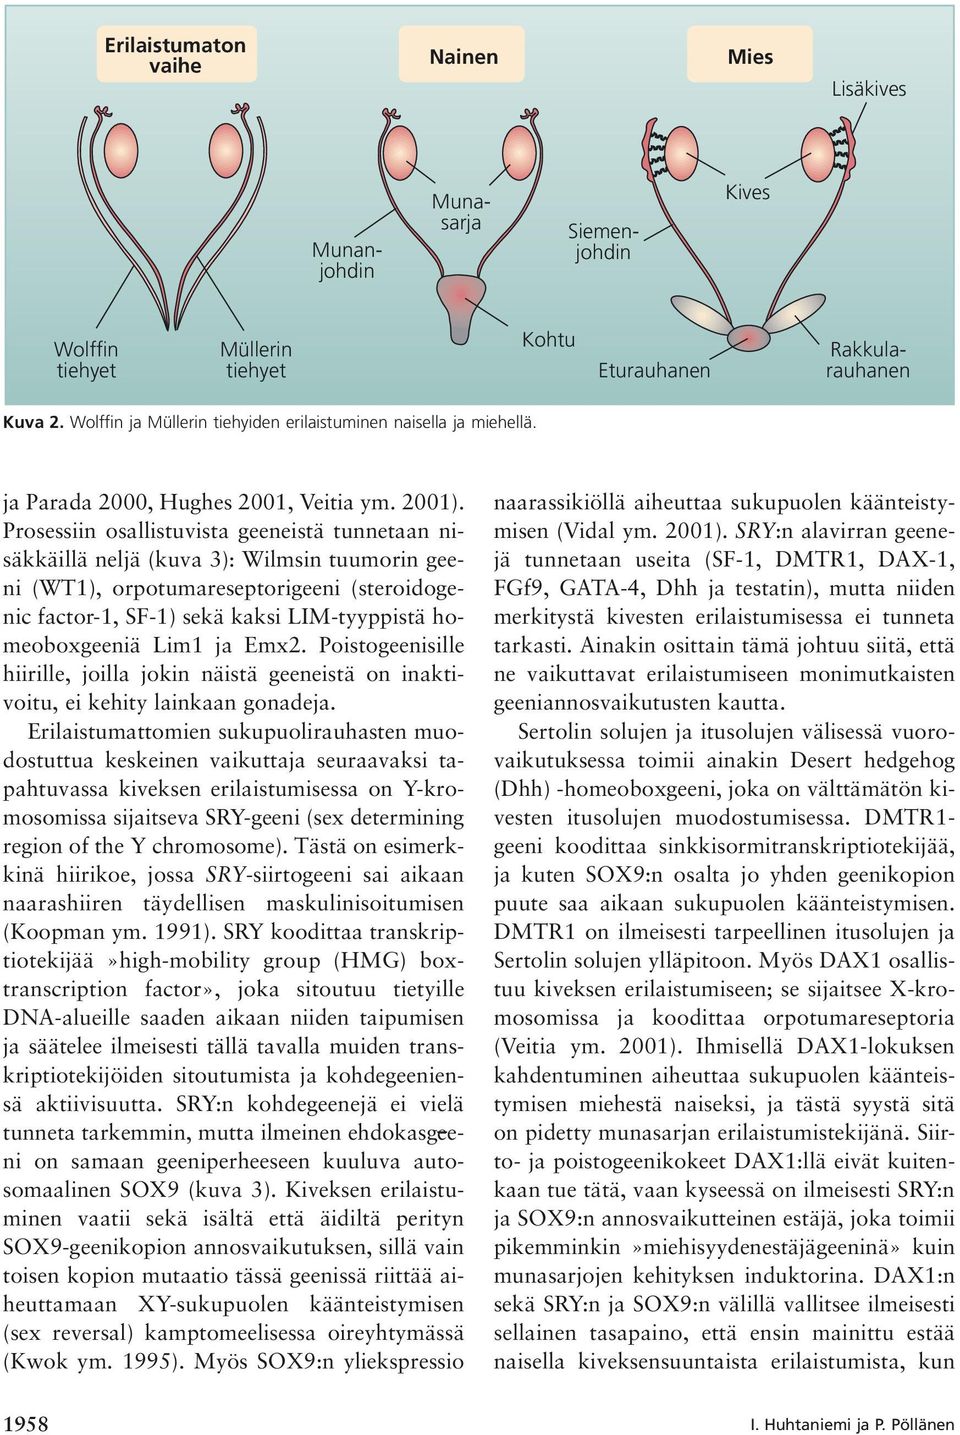 Prosessiin osallistuvista geeneistä tunnetaan nisäkkäillä neljä (kuva 3): Wilmsin tuumorin geeni (WT1), orpotumareseptorigeeni (steroidogenic factor-1, SF-1) sekä kaksi LIM-tyyppistä homeoboxgeeniä